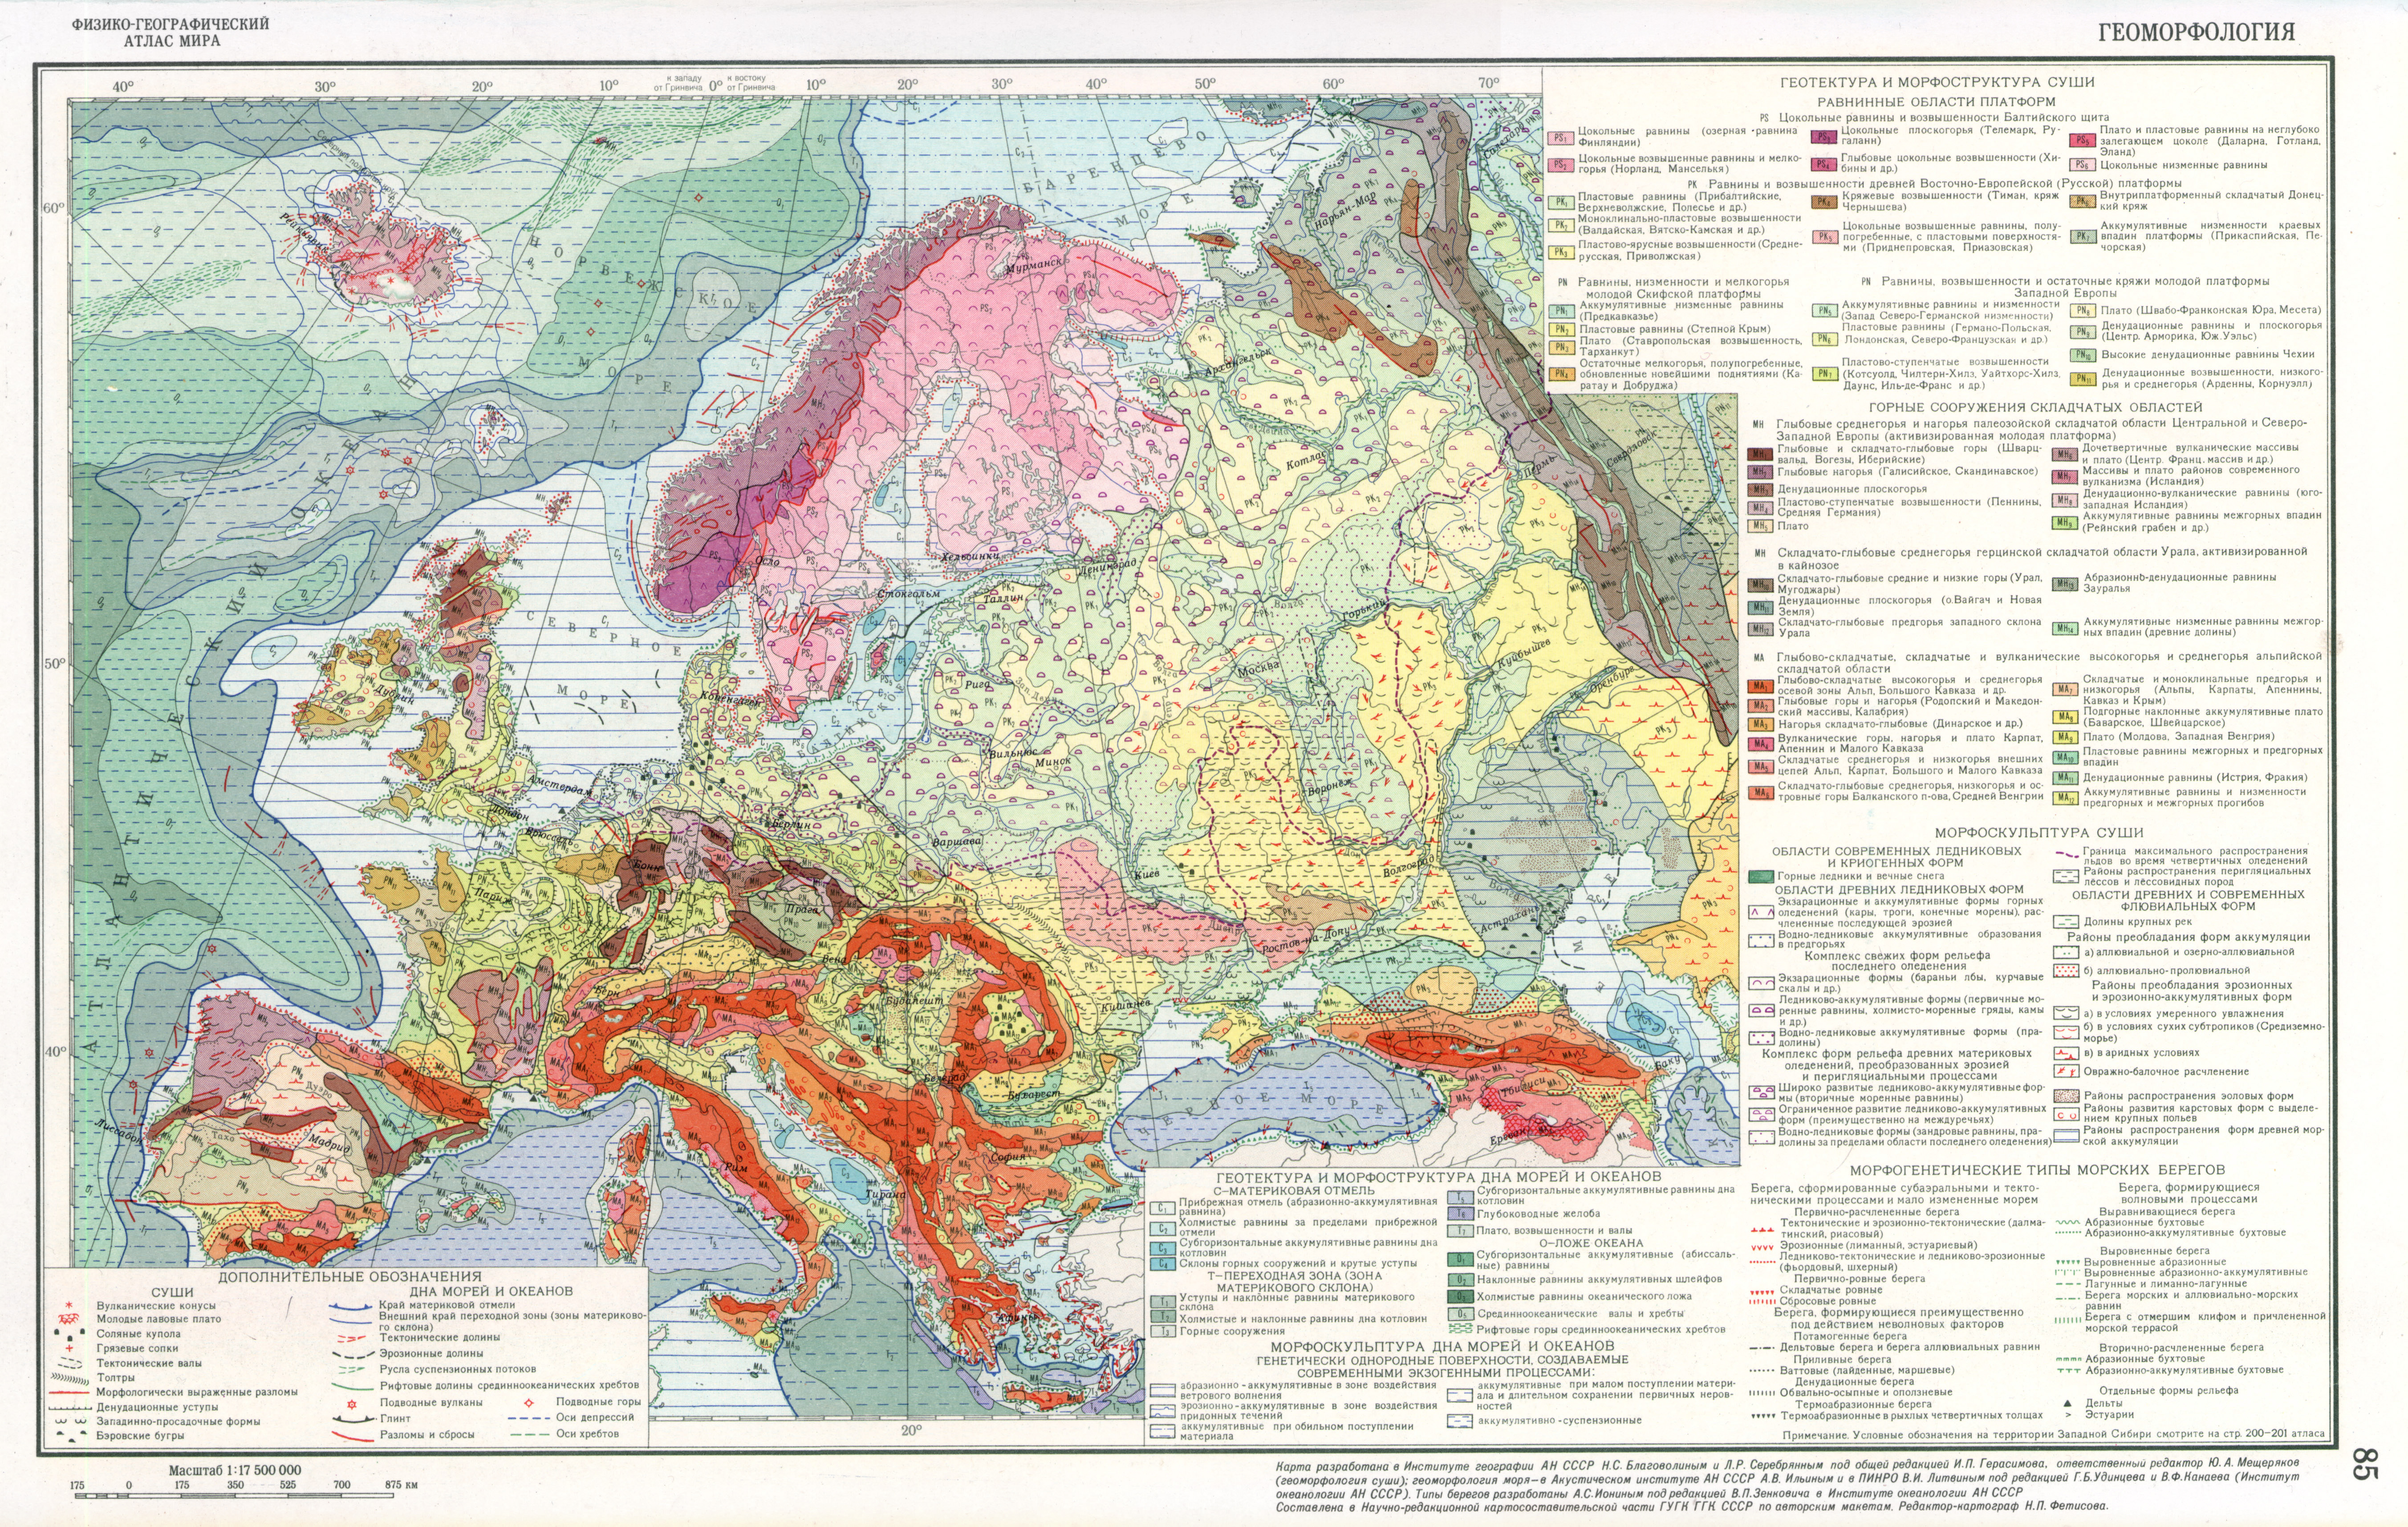 Геоморфологическая карта Европы